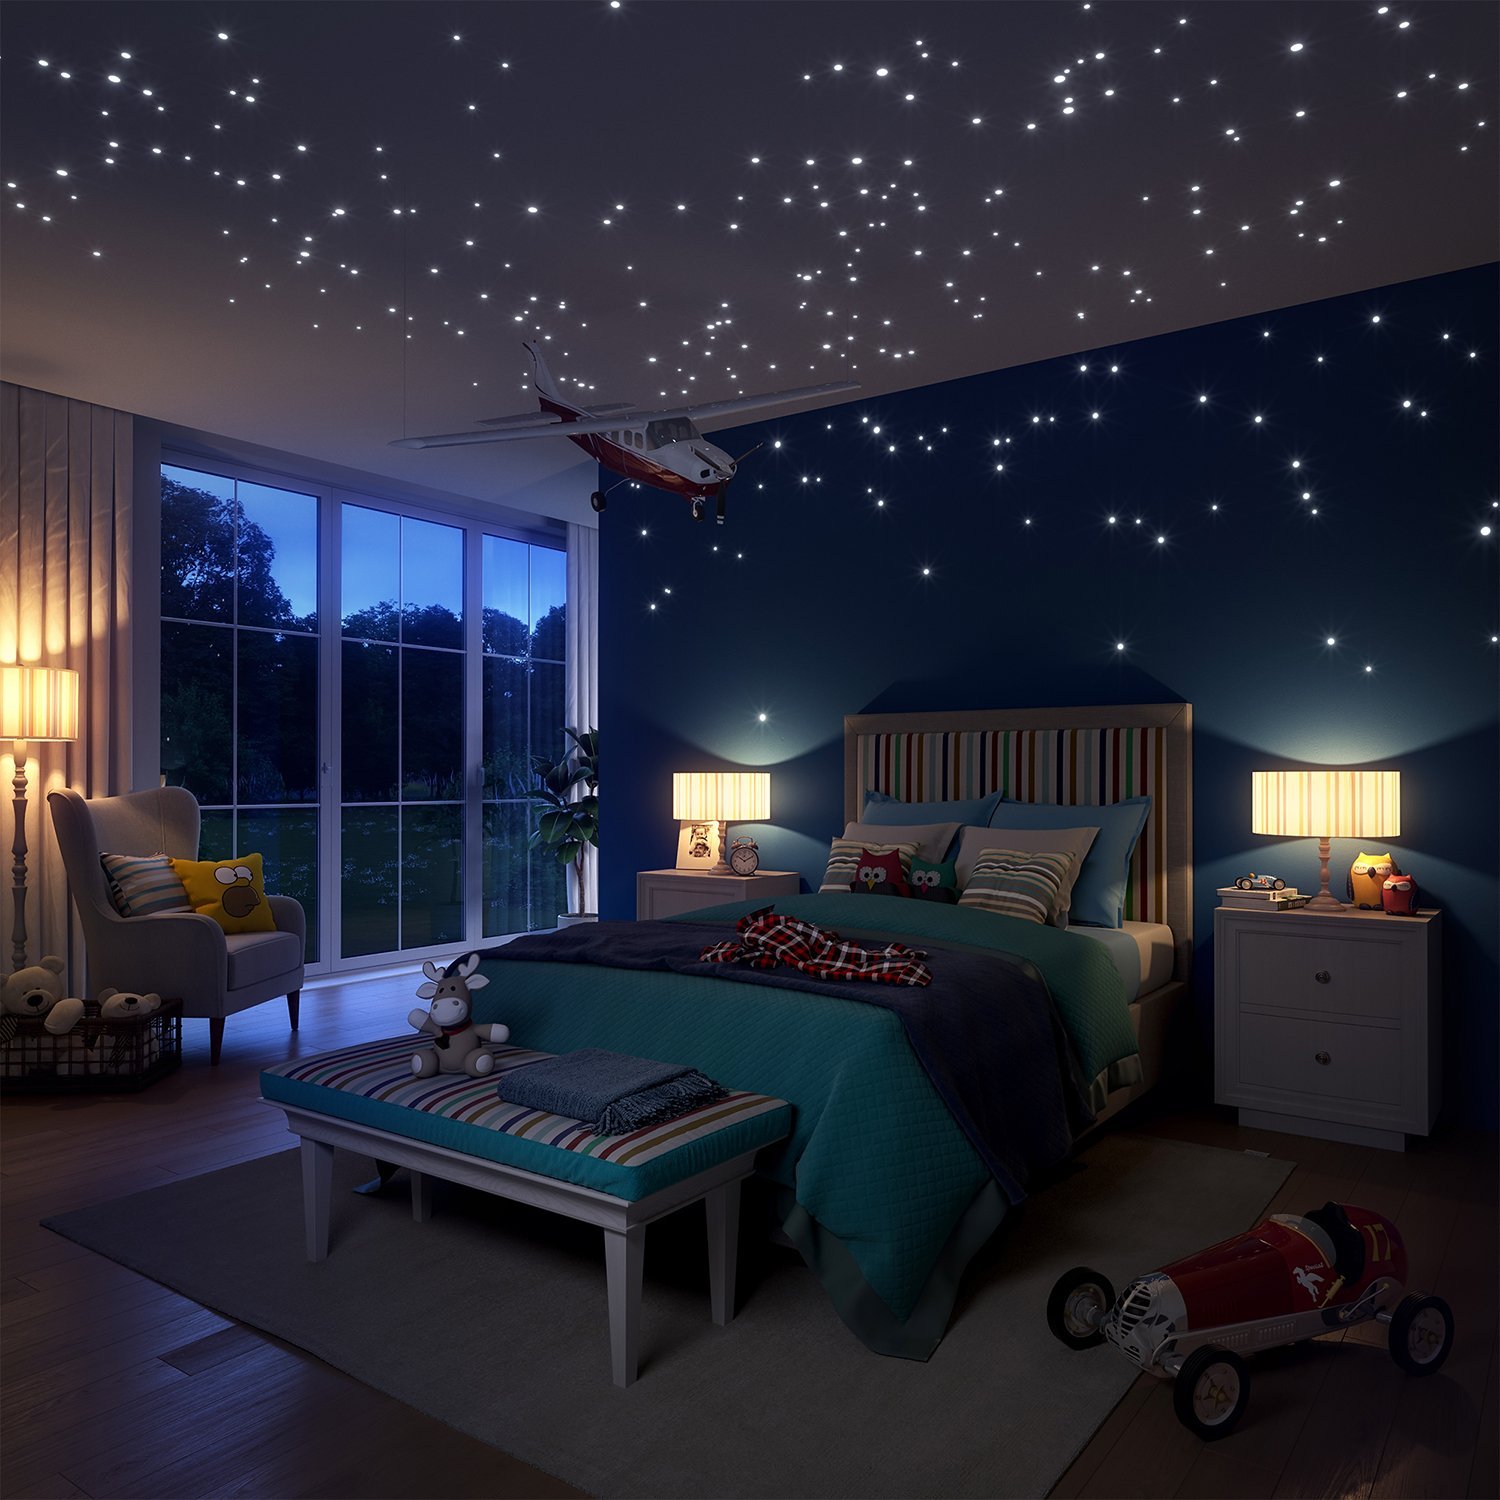 Звездное небо домой. Комната в космическом стиле. Натяжной потолок звездное небо. Спальня в космическом стиле. Потолок со звездами.